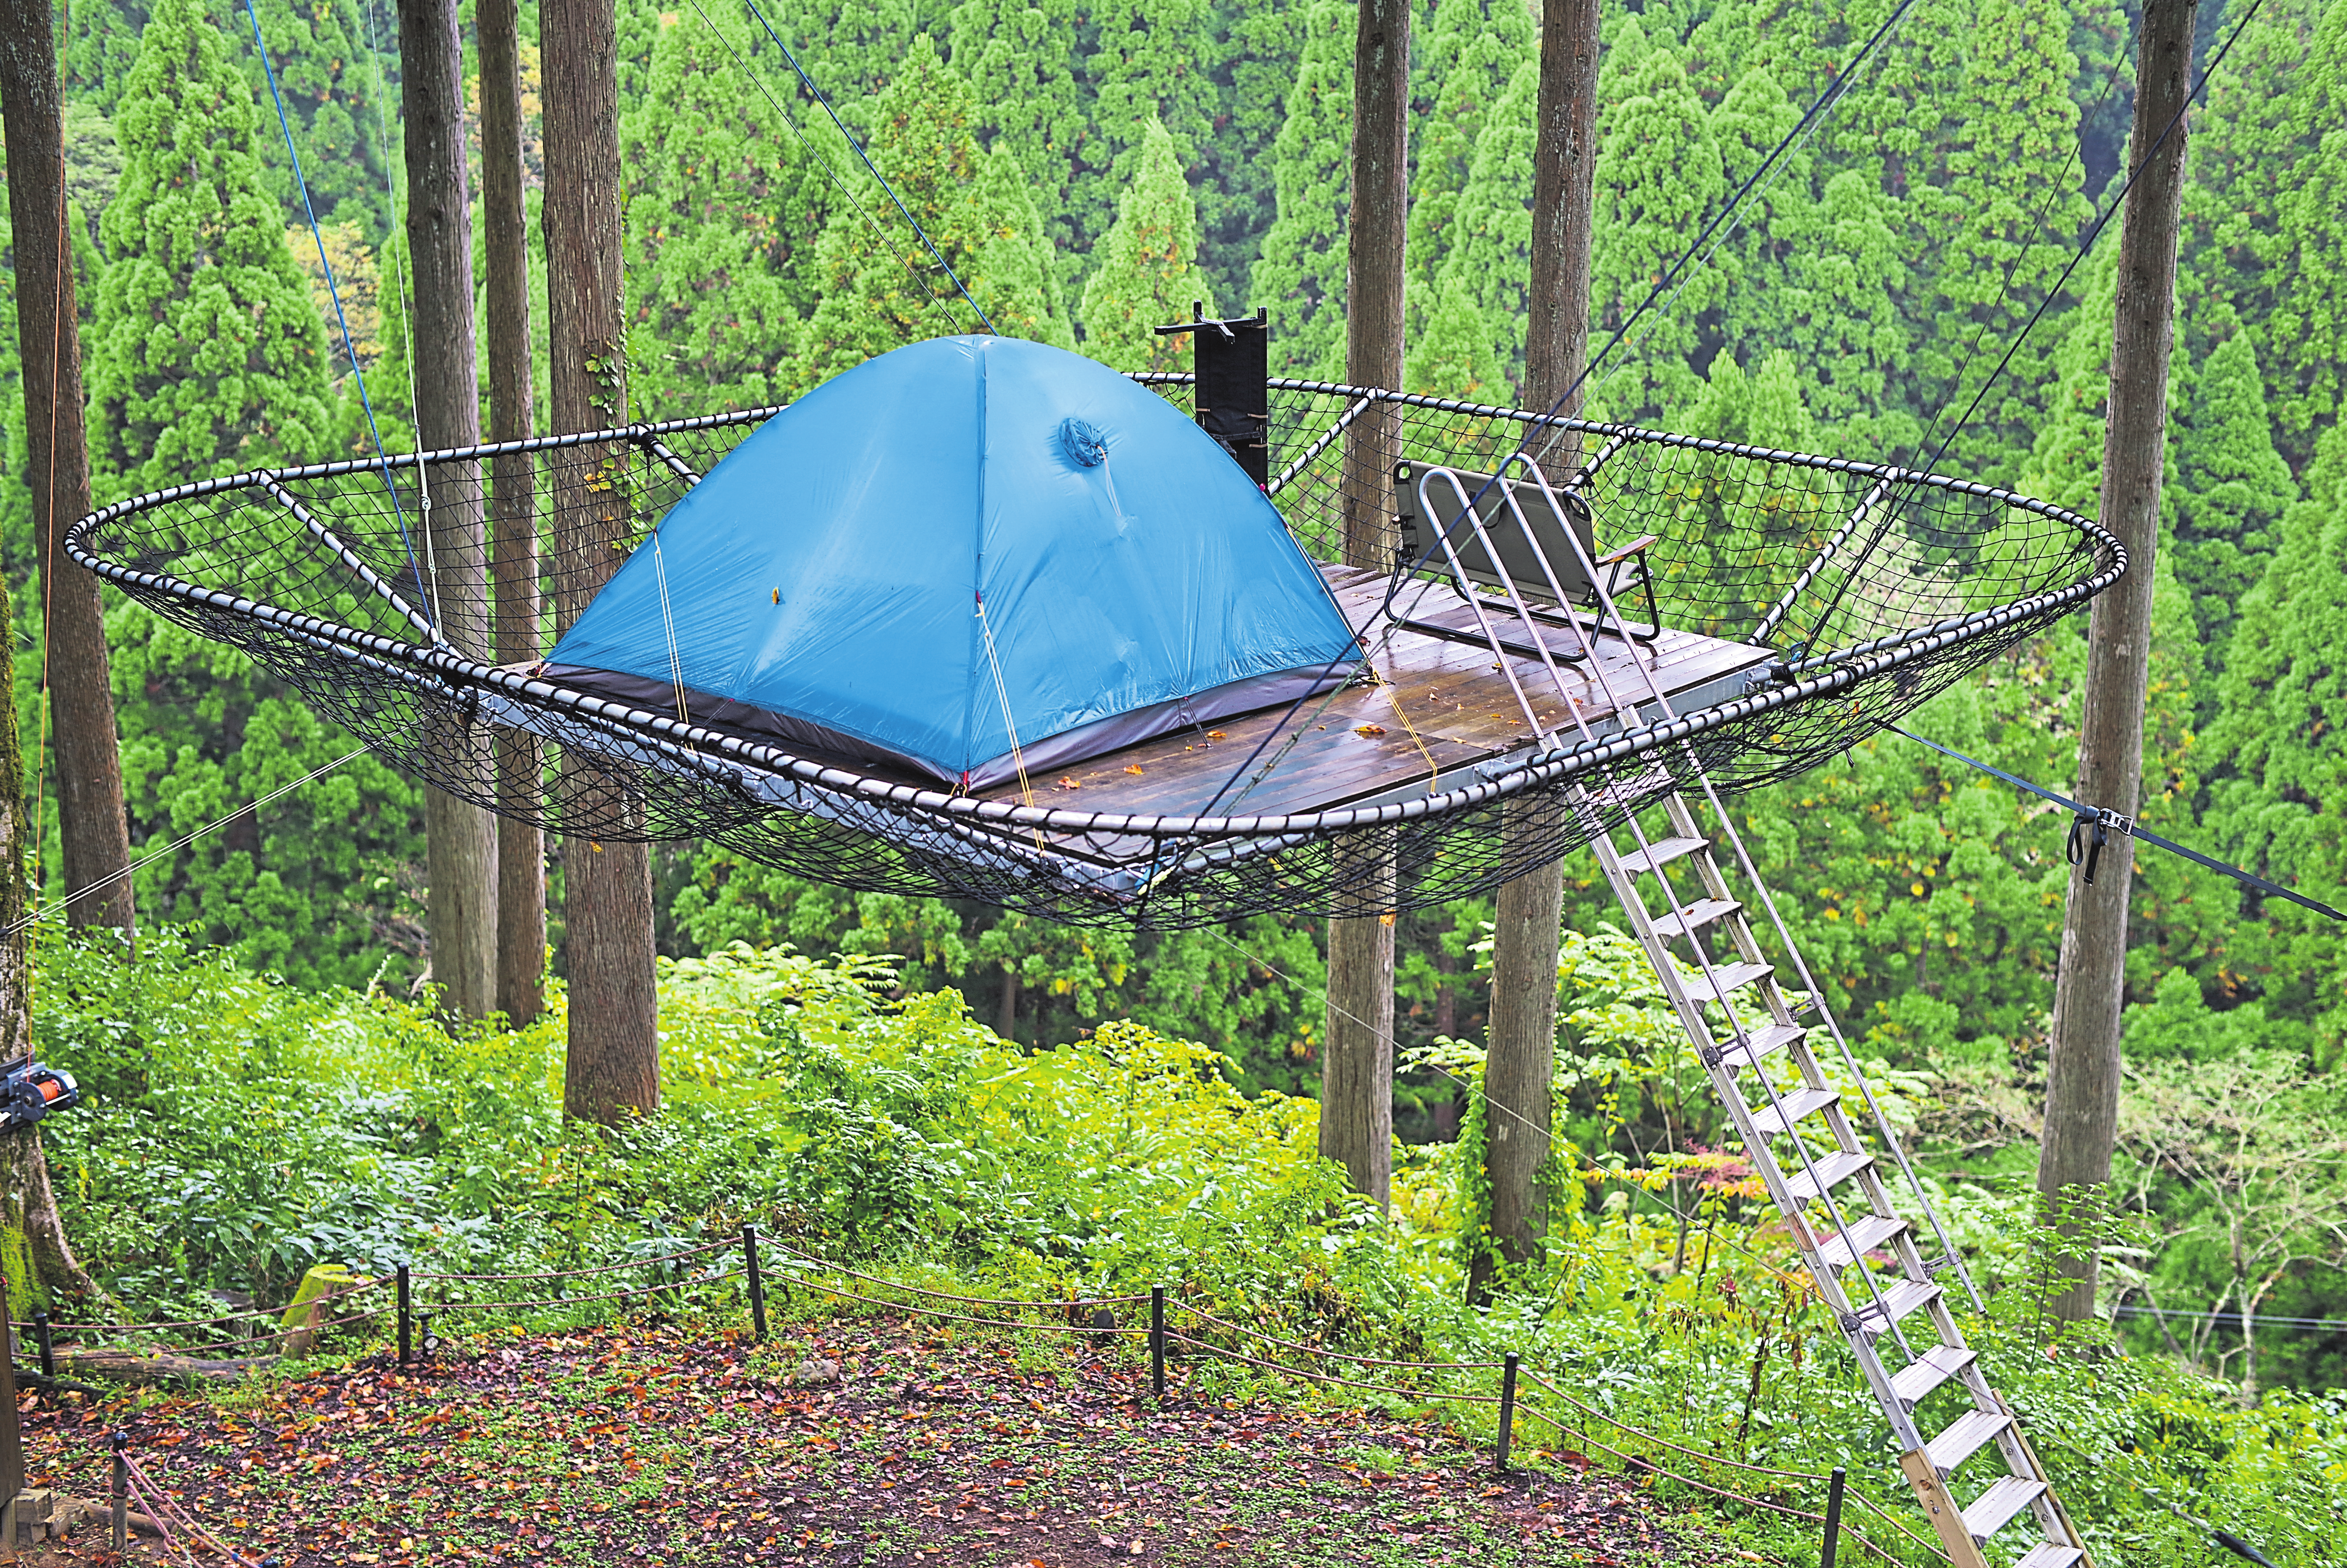 In luftiger Höhe übernachten: Tree tents sind unter Abenteurern beliebt.